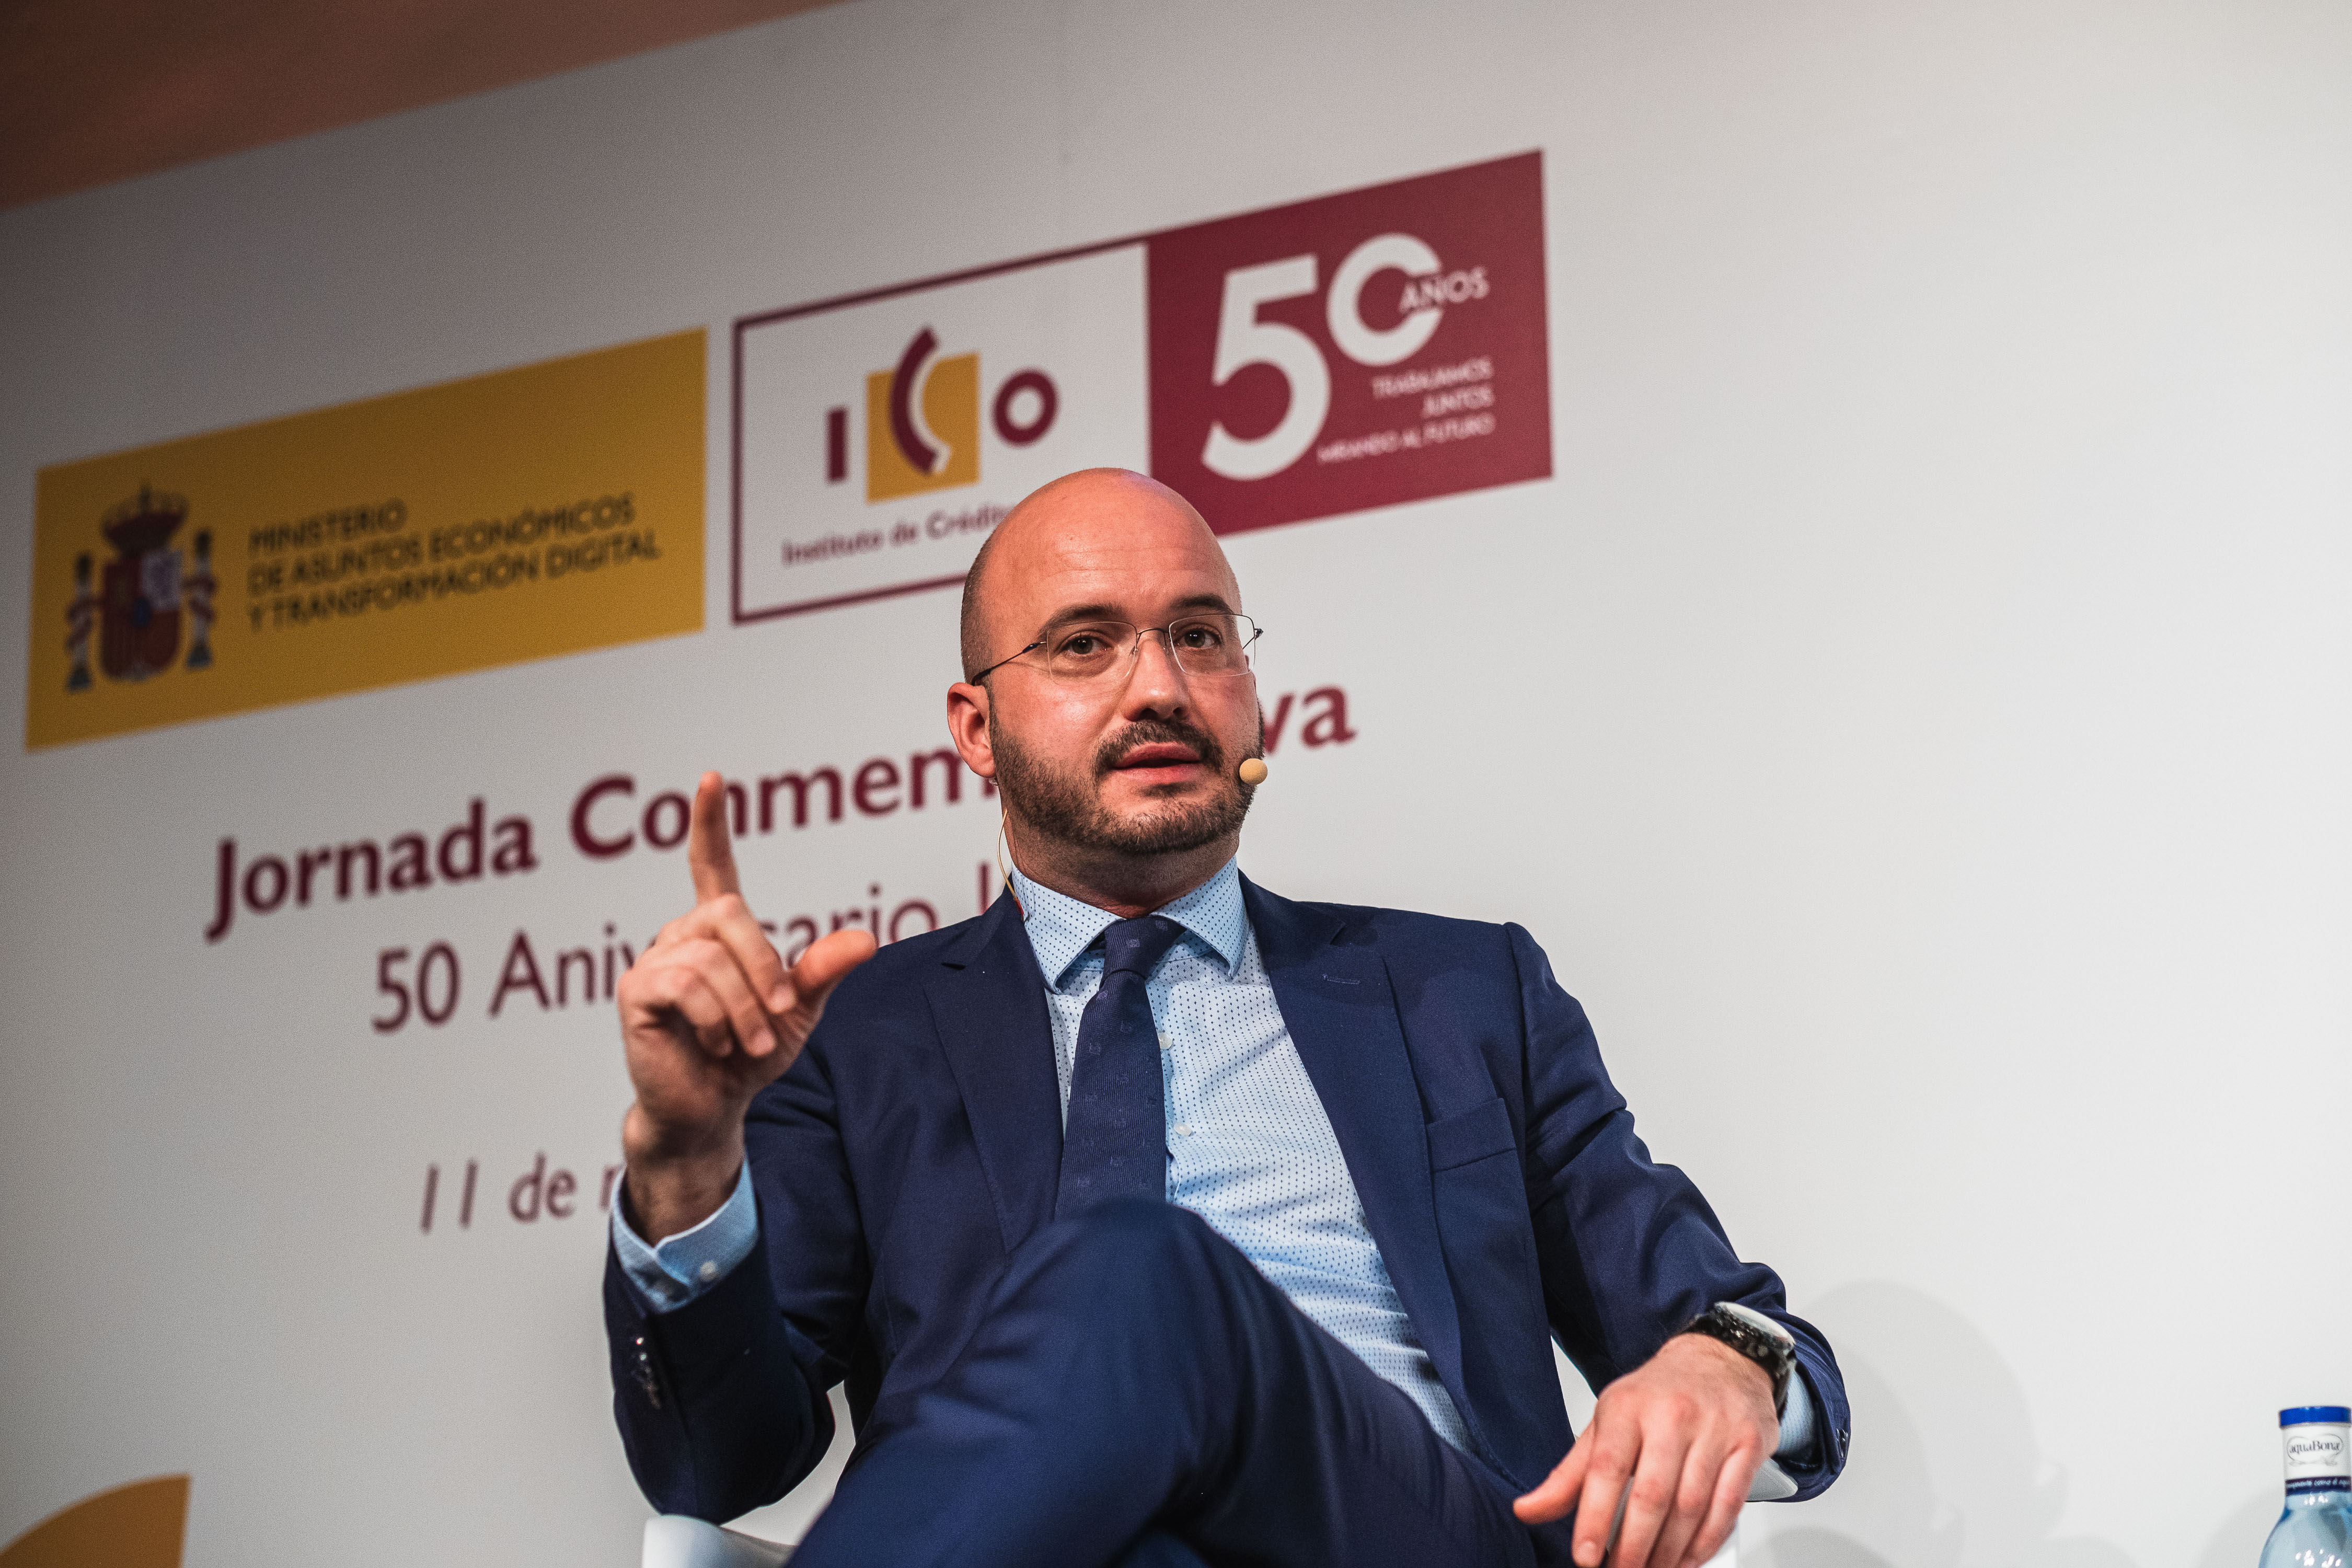 Jornada ICO 50 aniversario. Presidente de la Confederación Española de Jóvenes Empresarios, Fermín Albaladejo